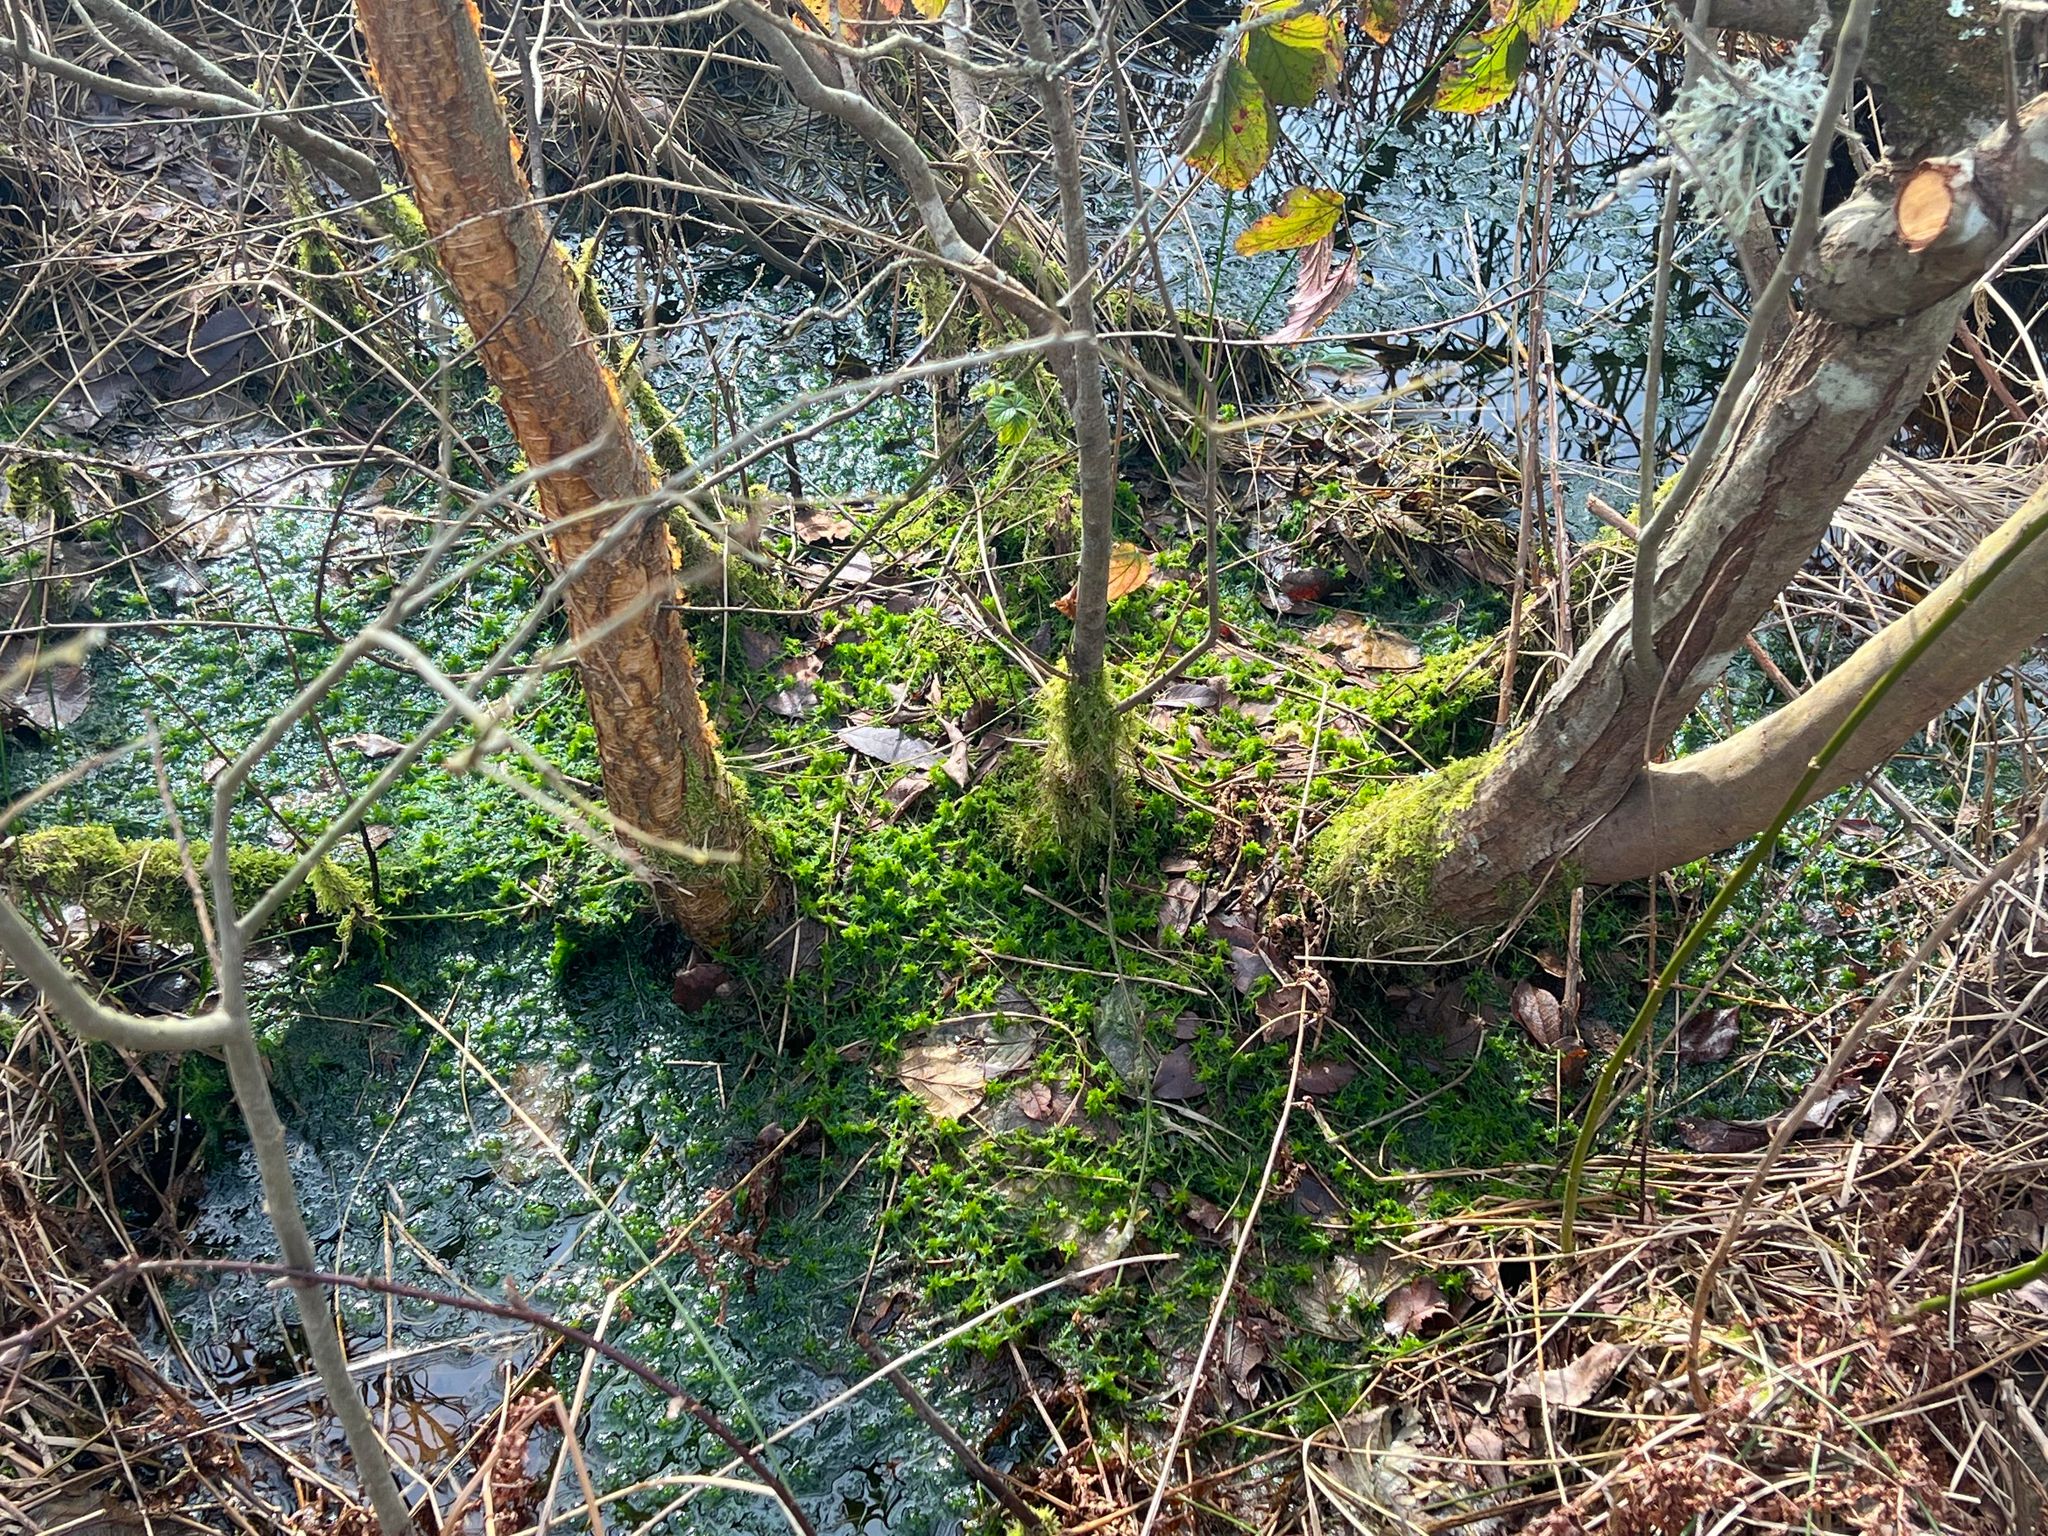 Photo of a peat bog